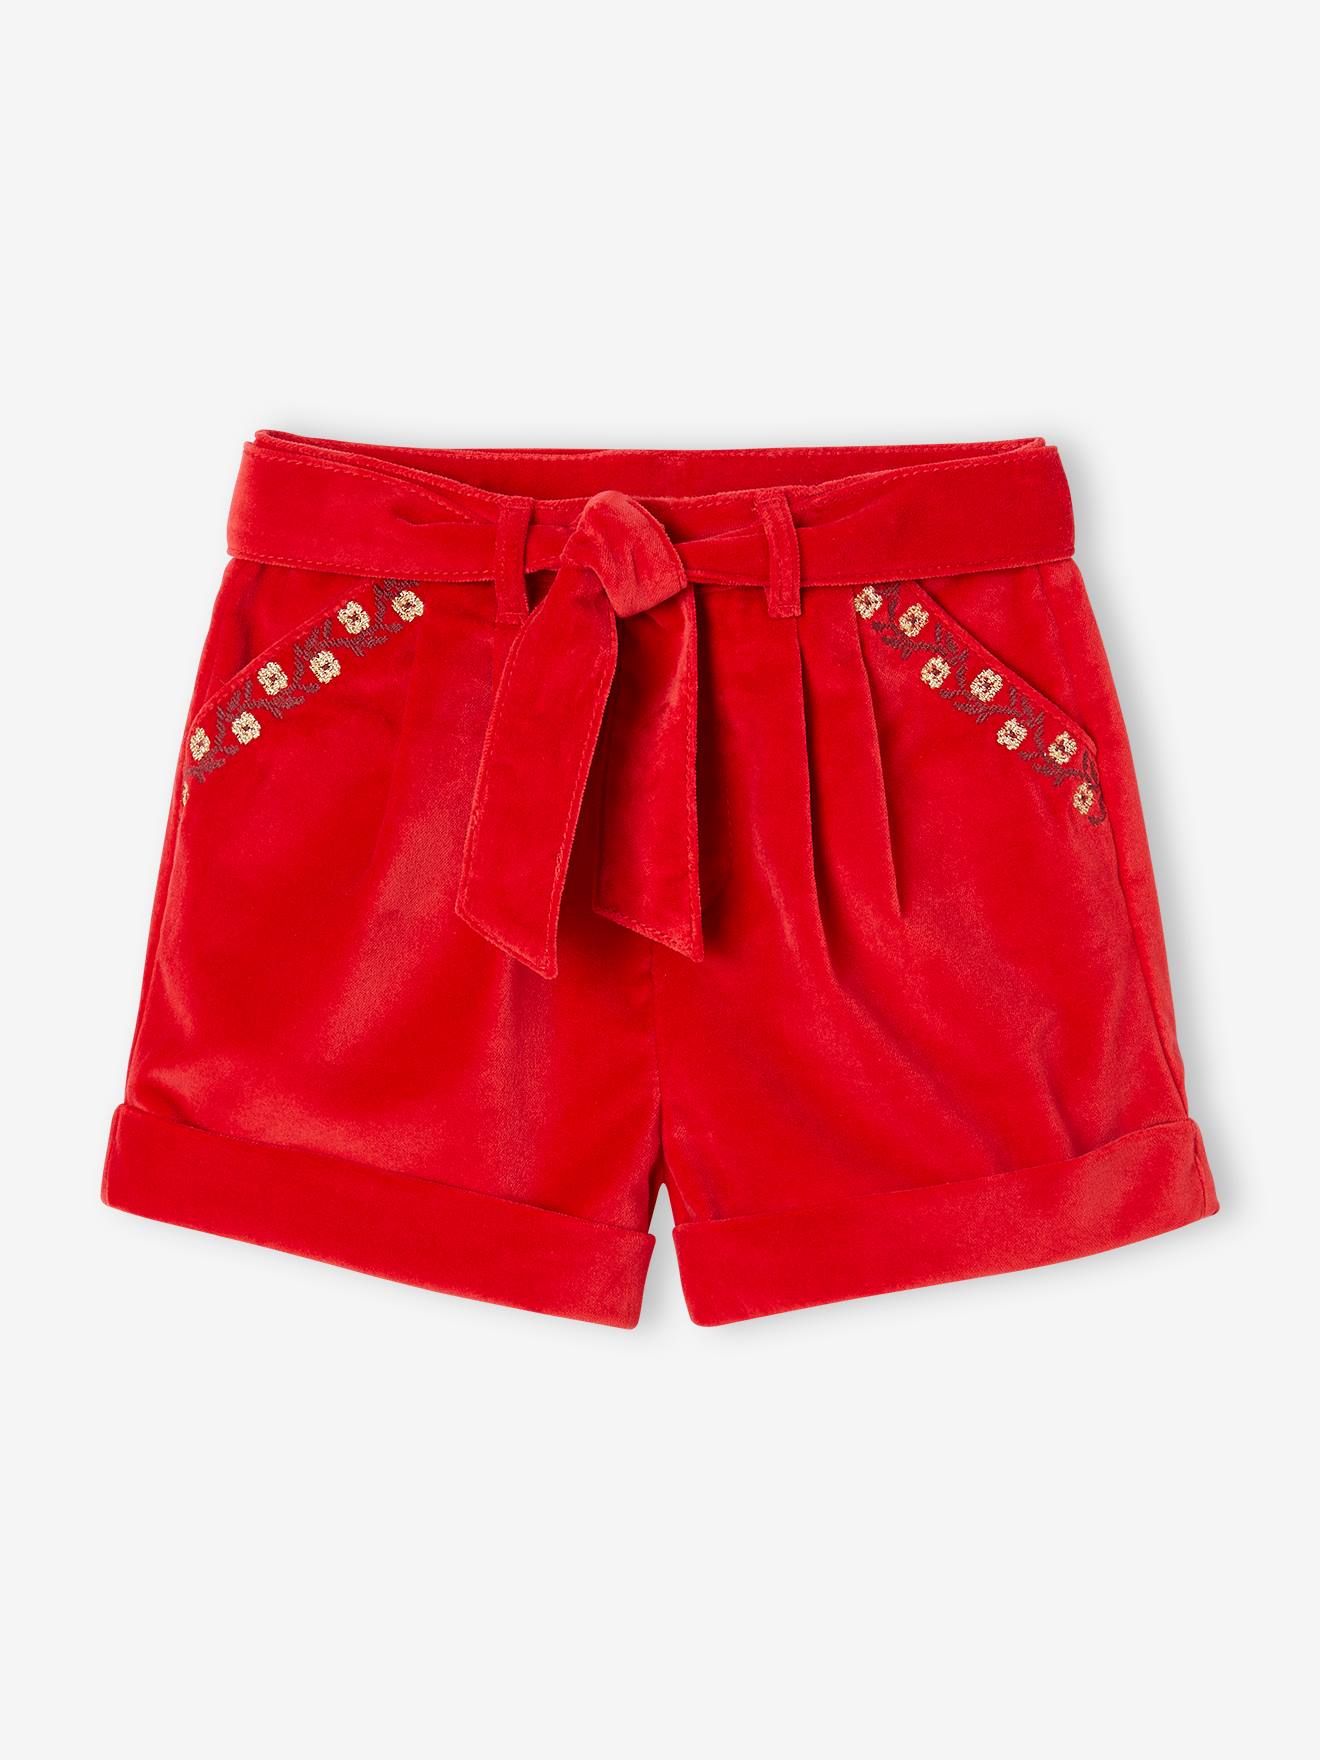 Fancy Shorts in Plain Velour, for Girls red